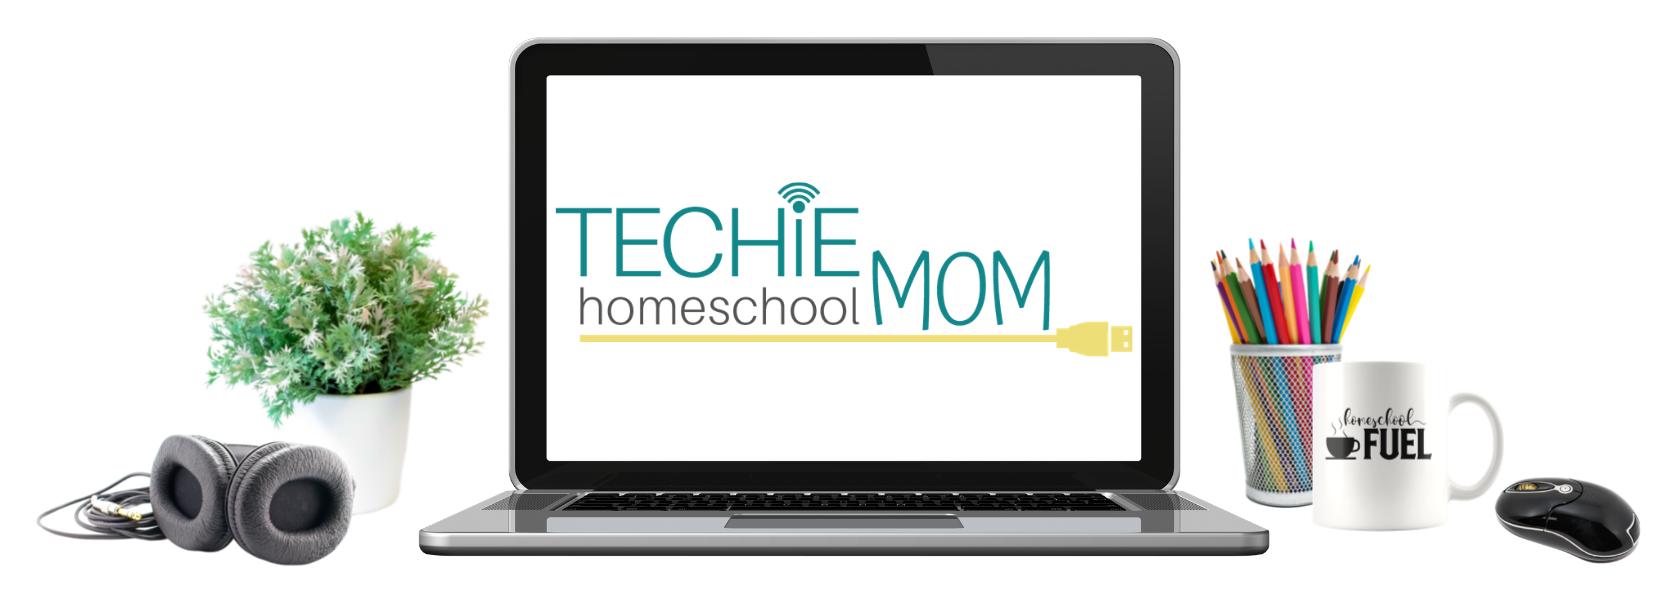 techie homeschool mom